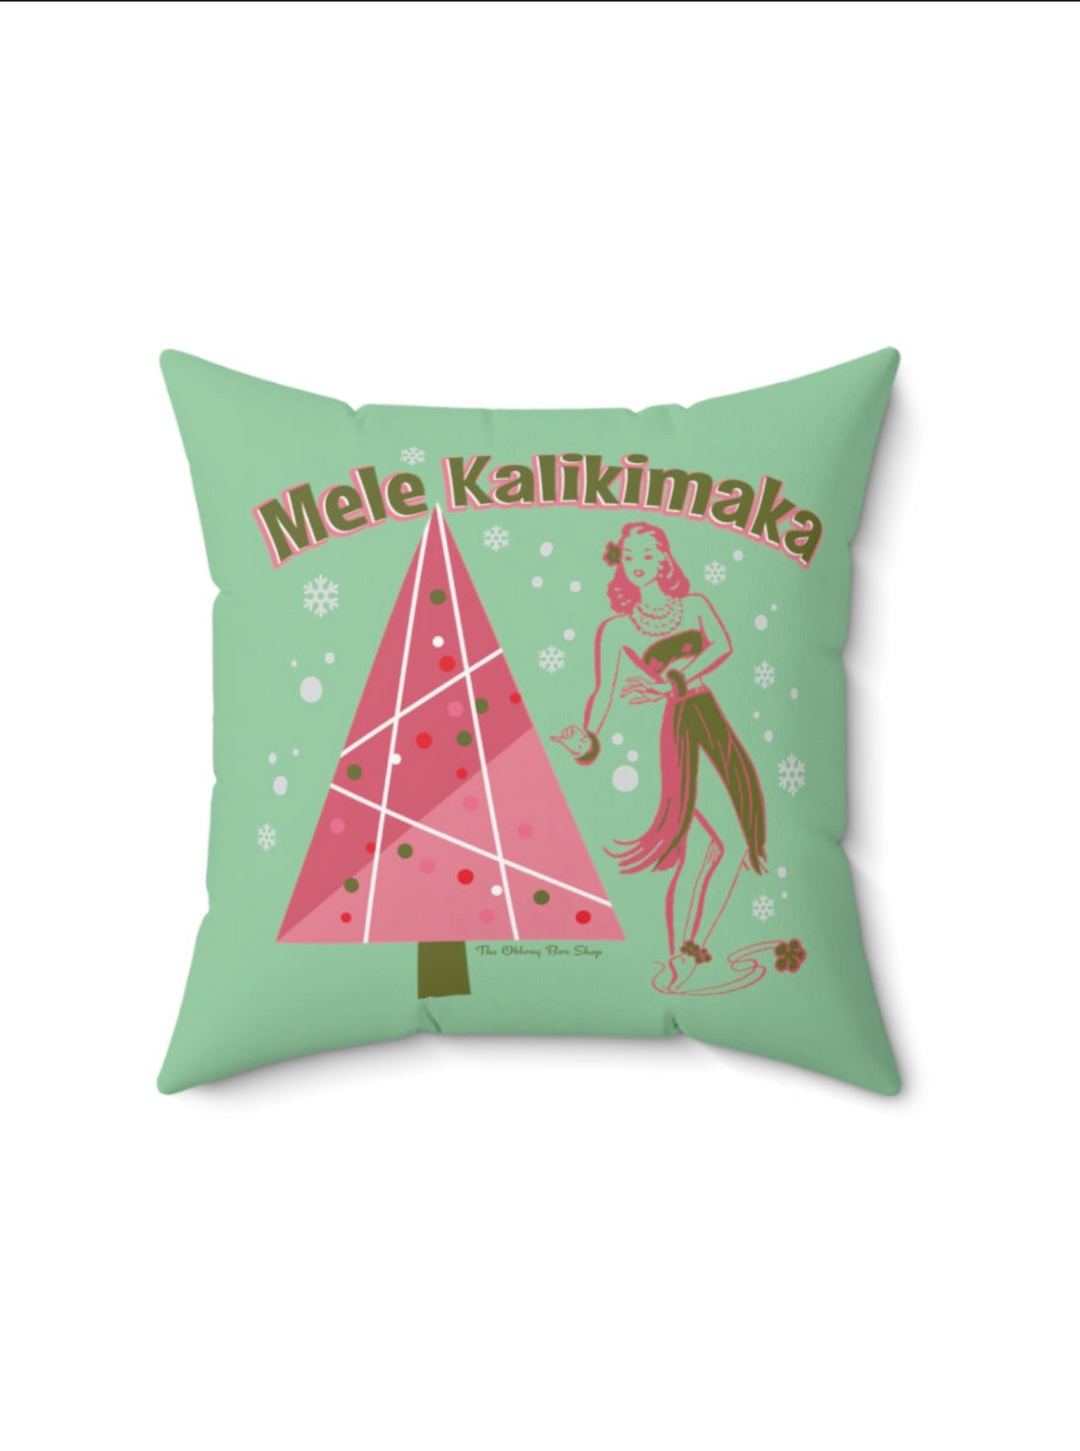 Mele Kalikimaka Throw Pillow Mint